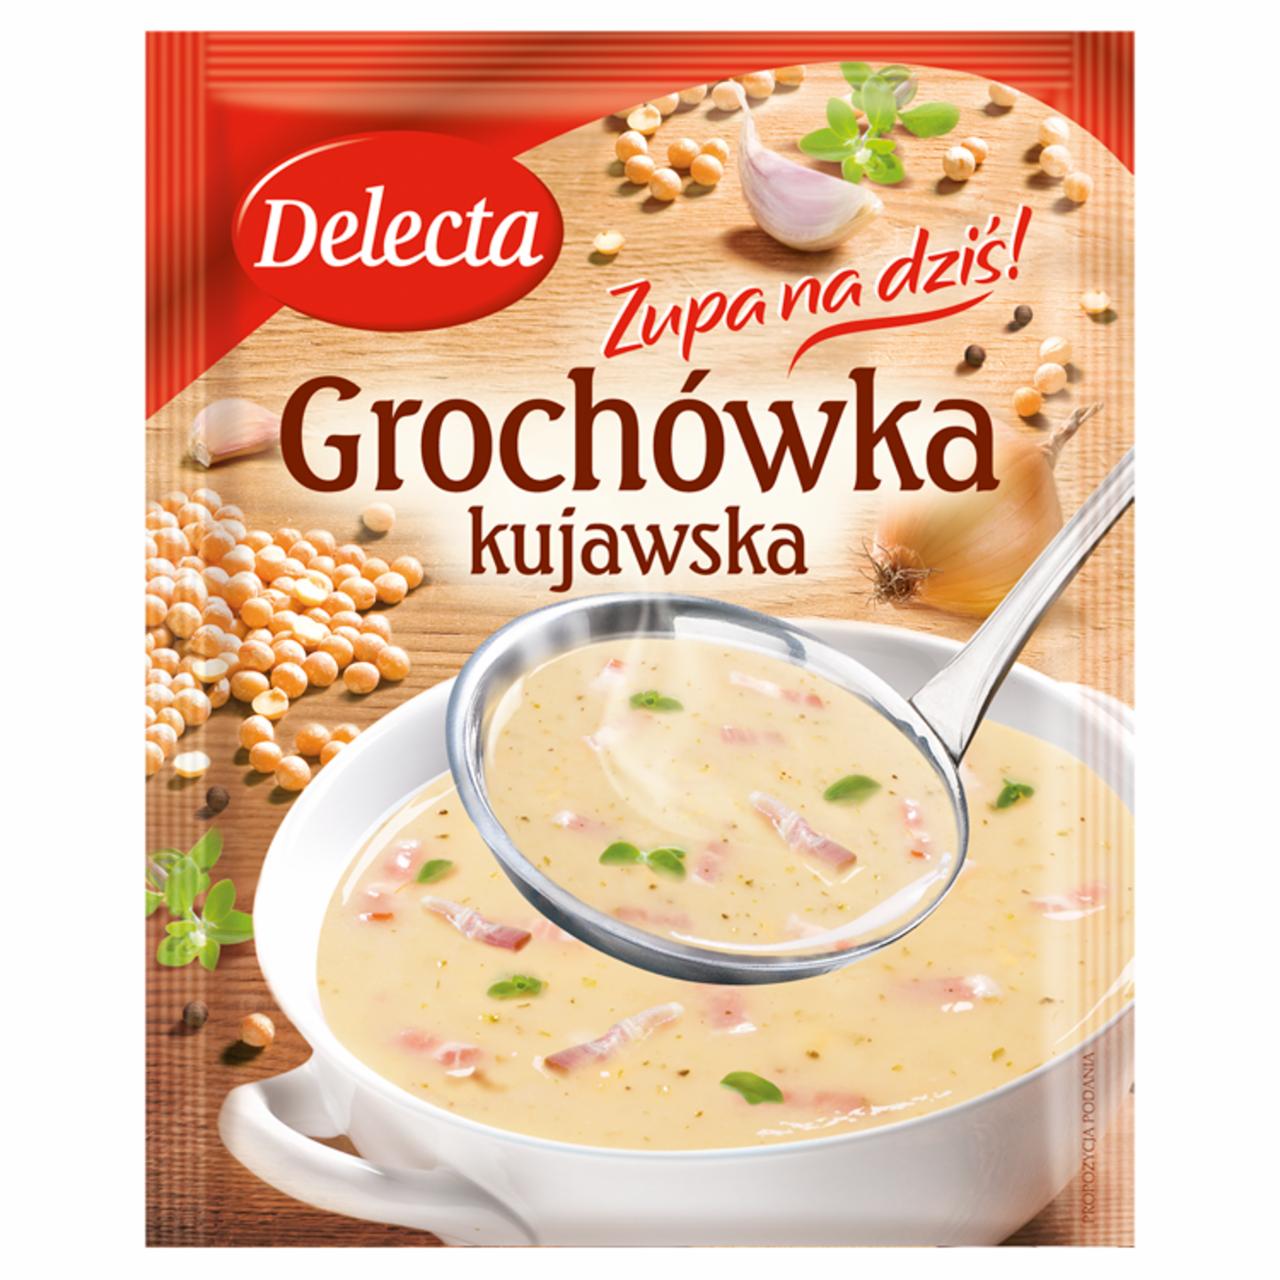 Photo - Delecta Zupa na dziś Kujawska Pea Soup 54 g